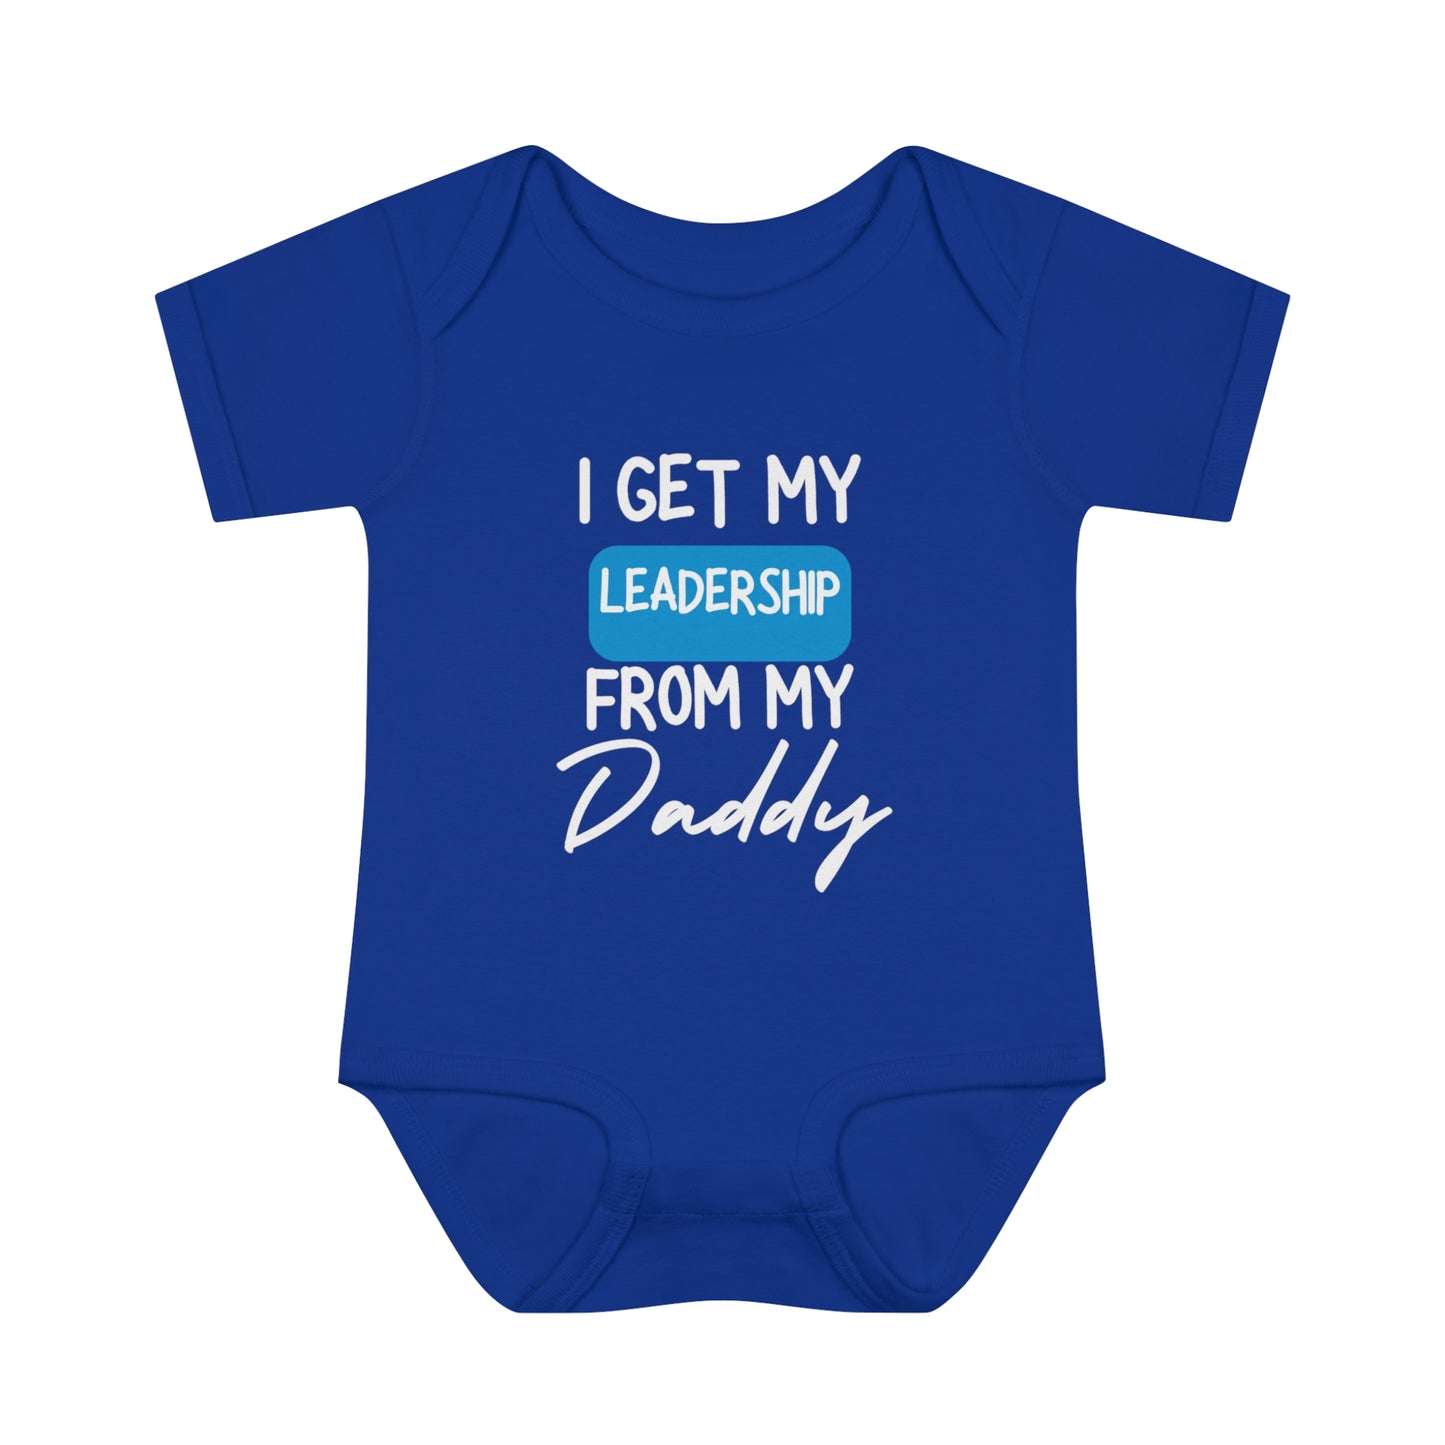 Infant Baby Rib Bodysuit (LD/Grey)